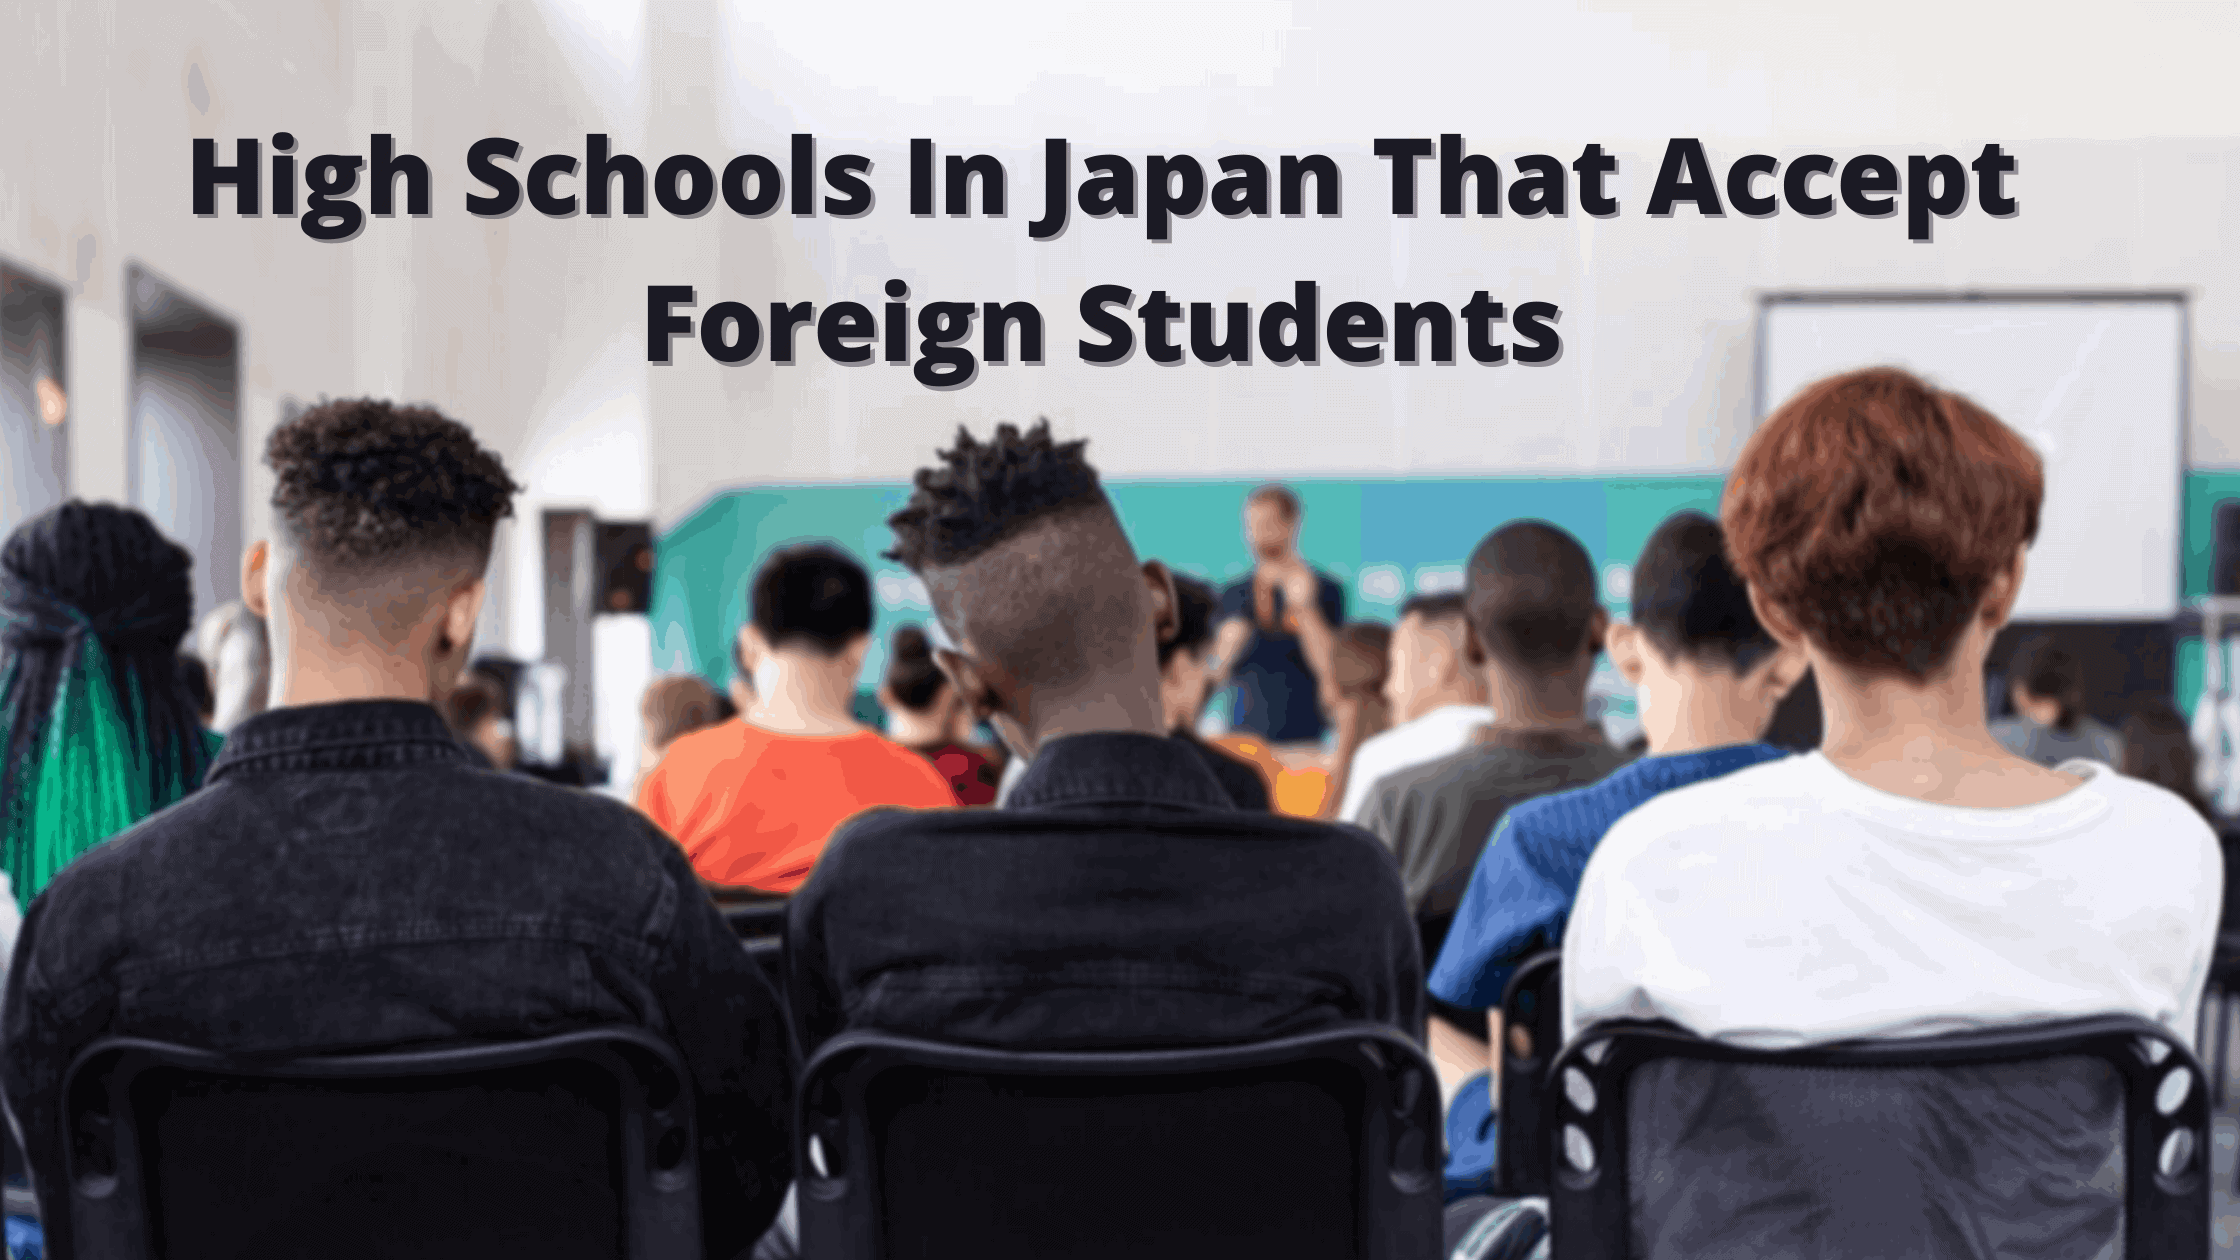 外国人留学生を受け入れている日本の高等学校